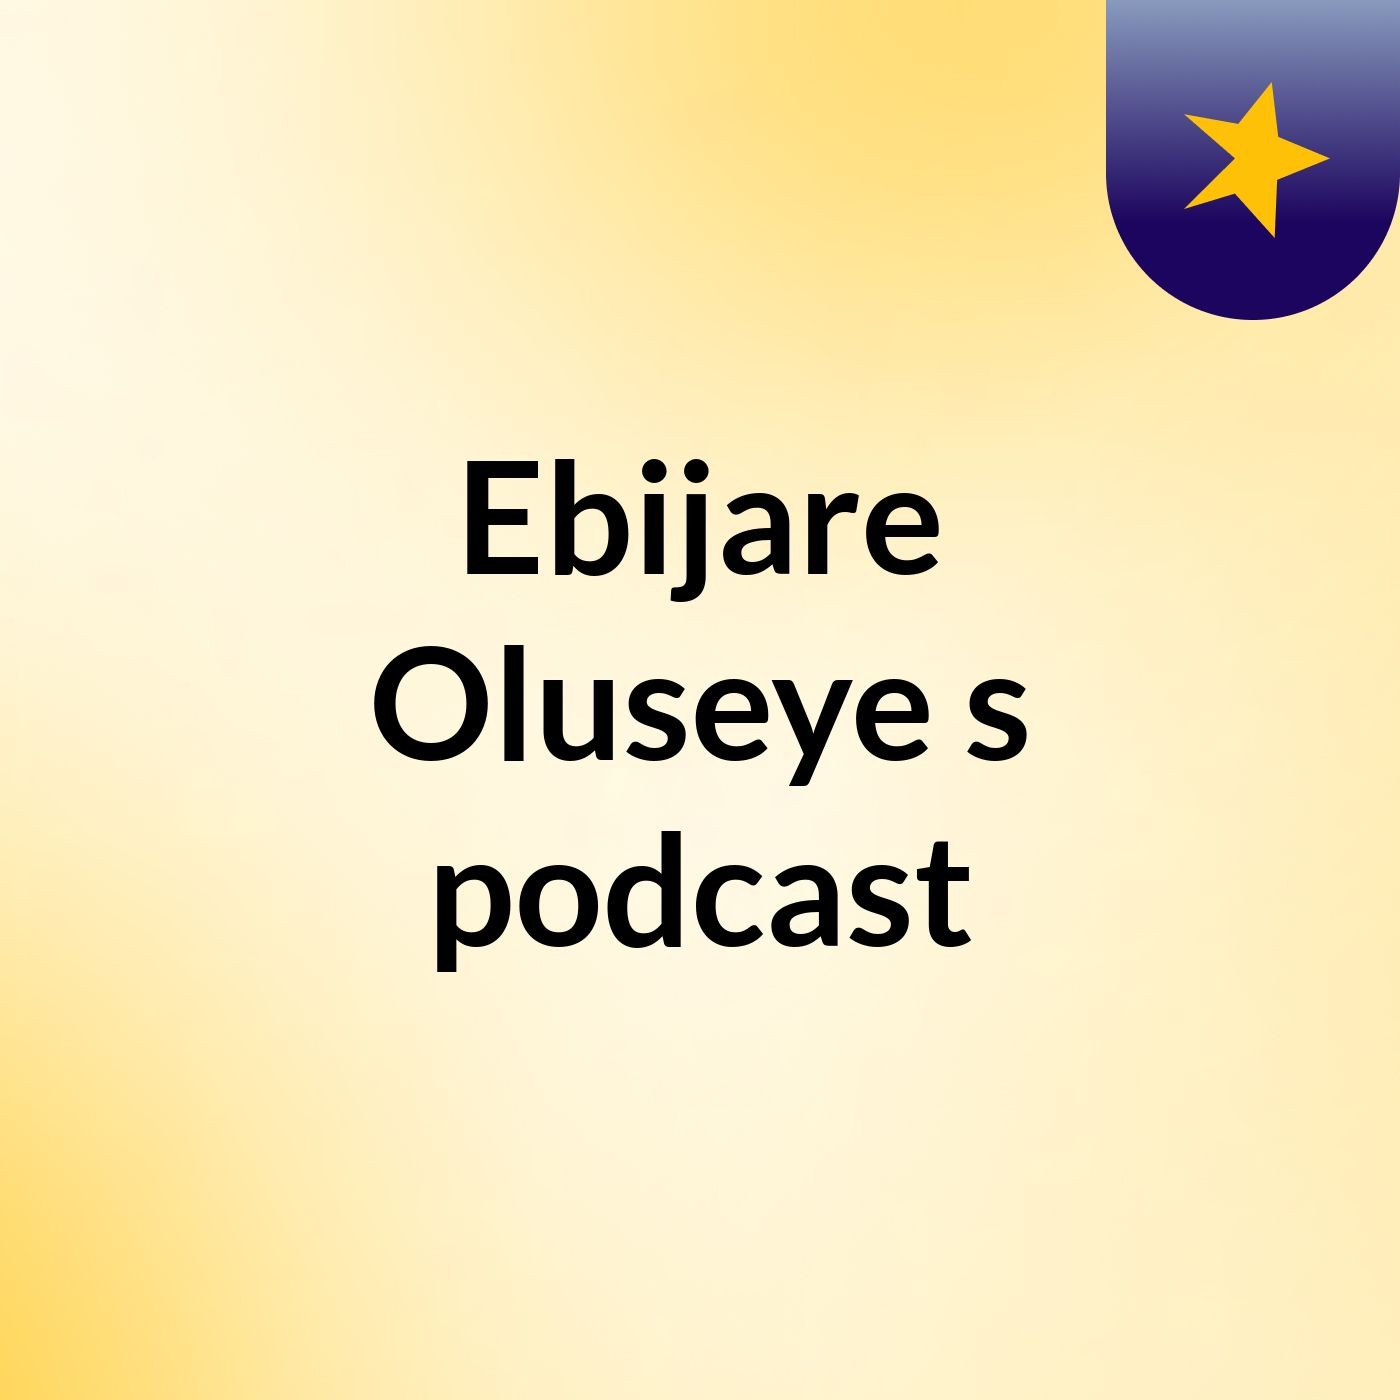 Ebijare Oluseye's podcast